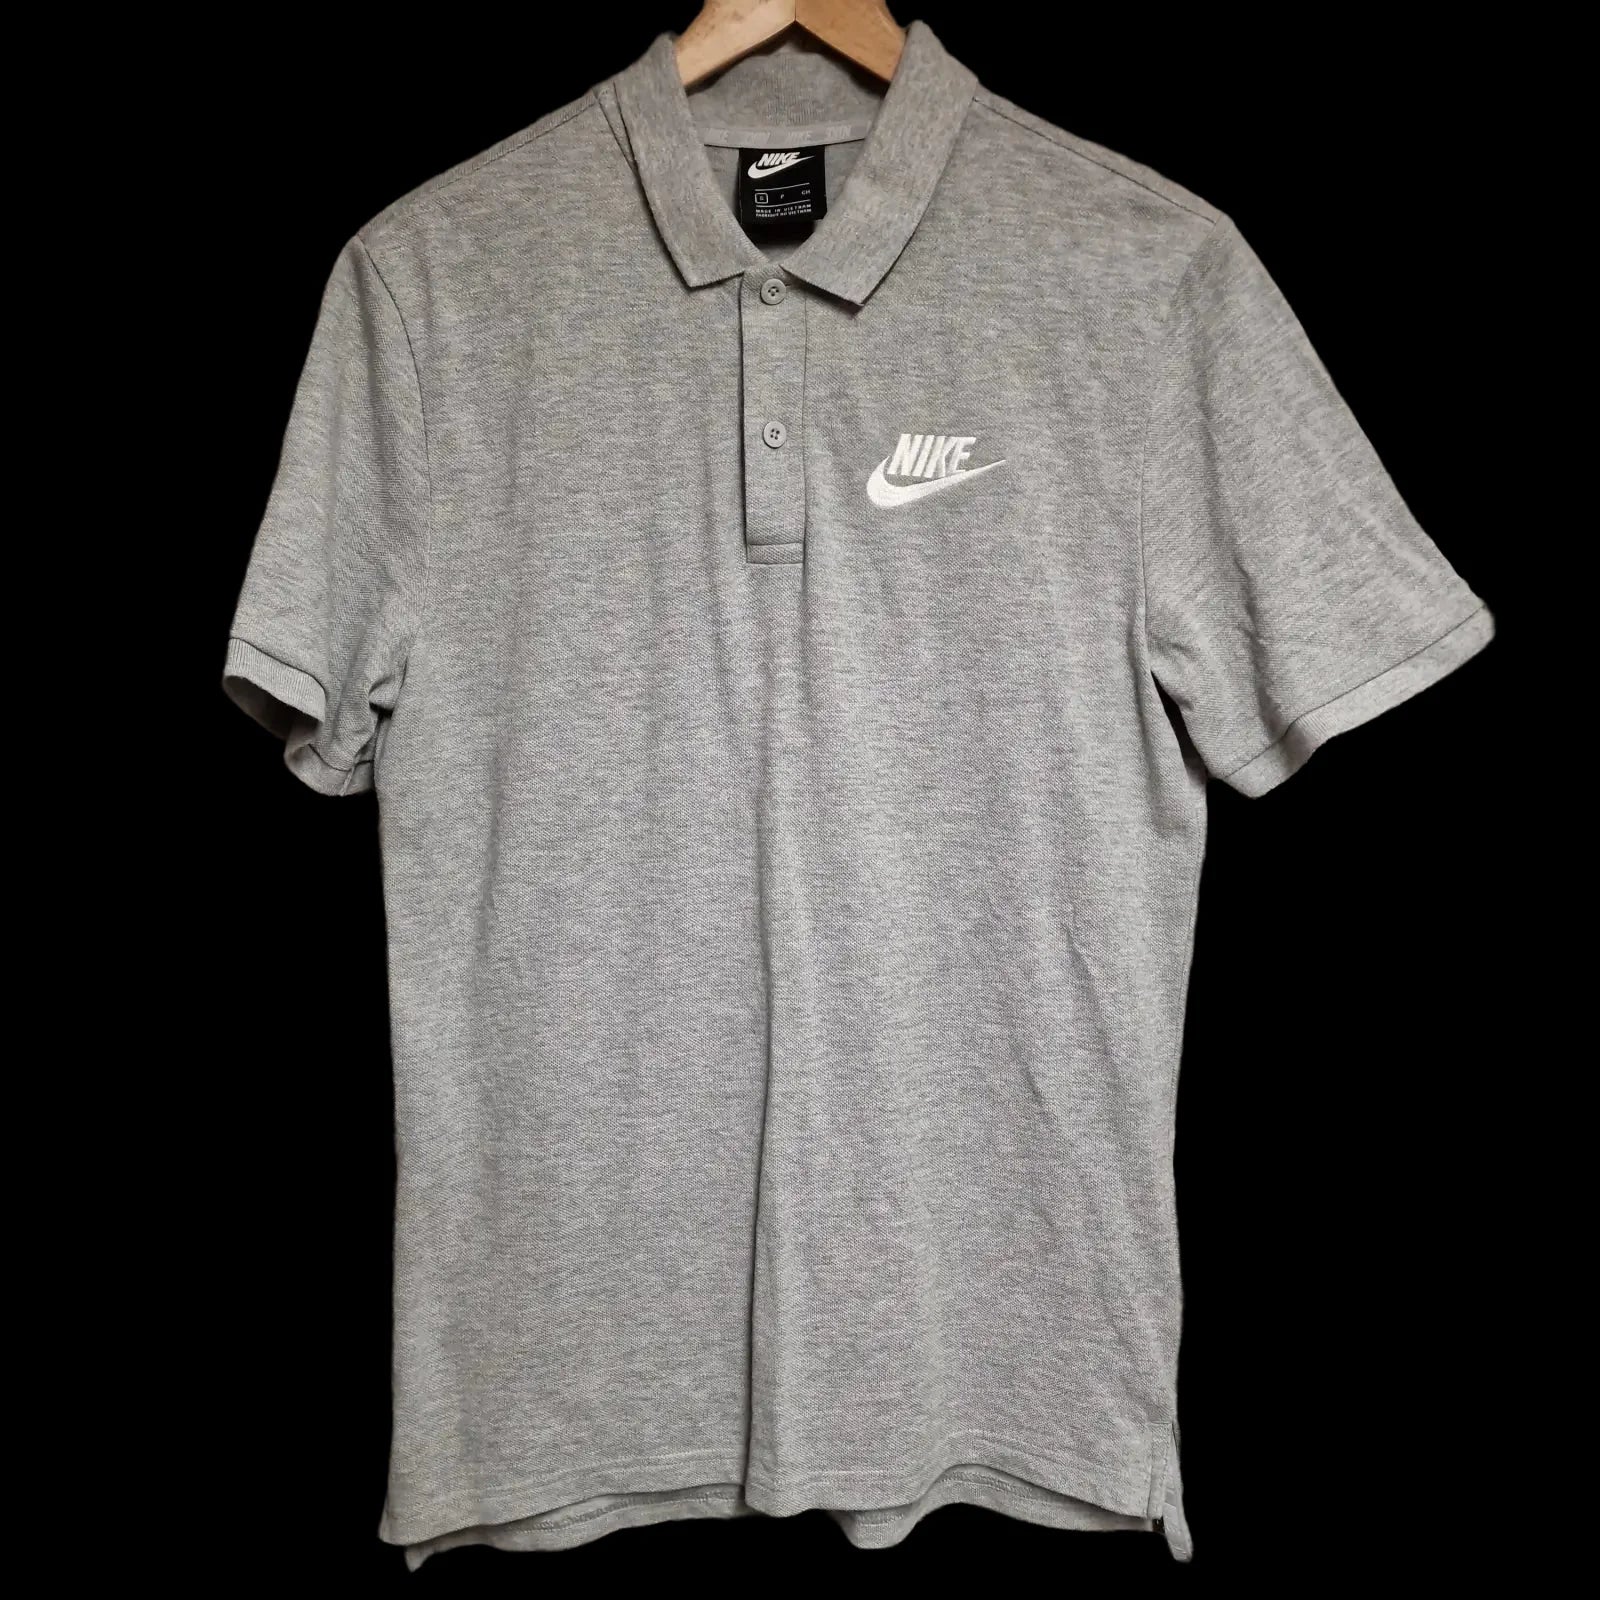 Mens Nike Grey Polo Shirt Uk Small - Shirts - 1 - 770